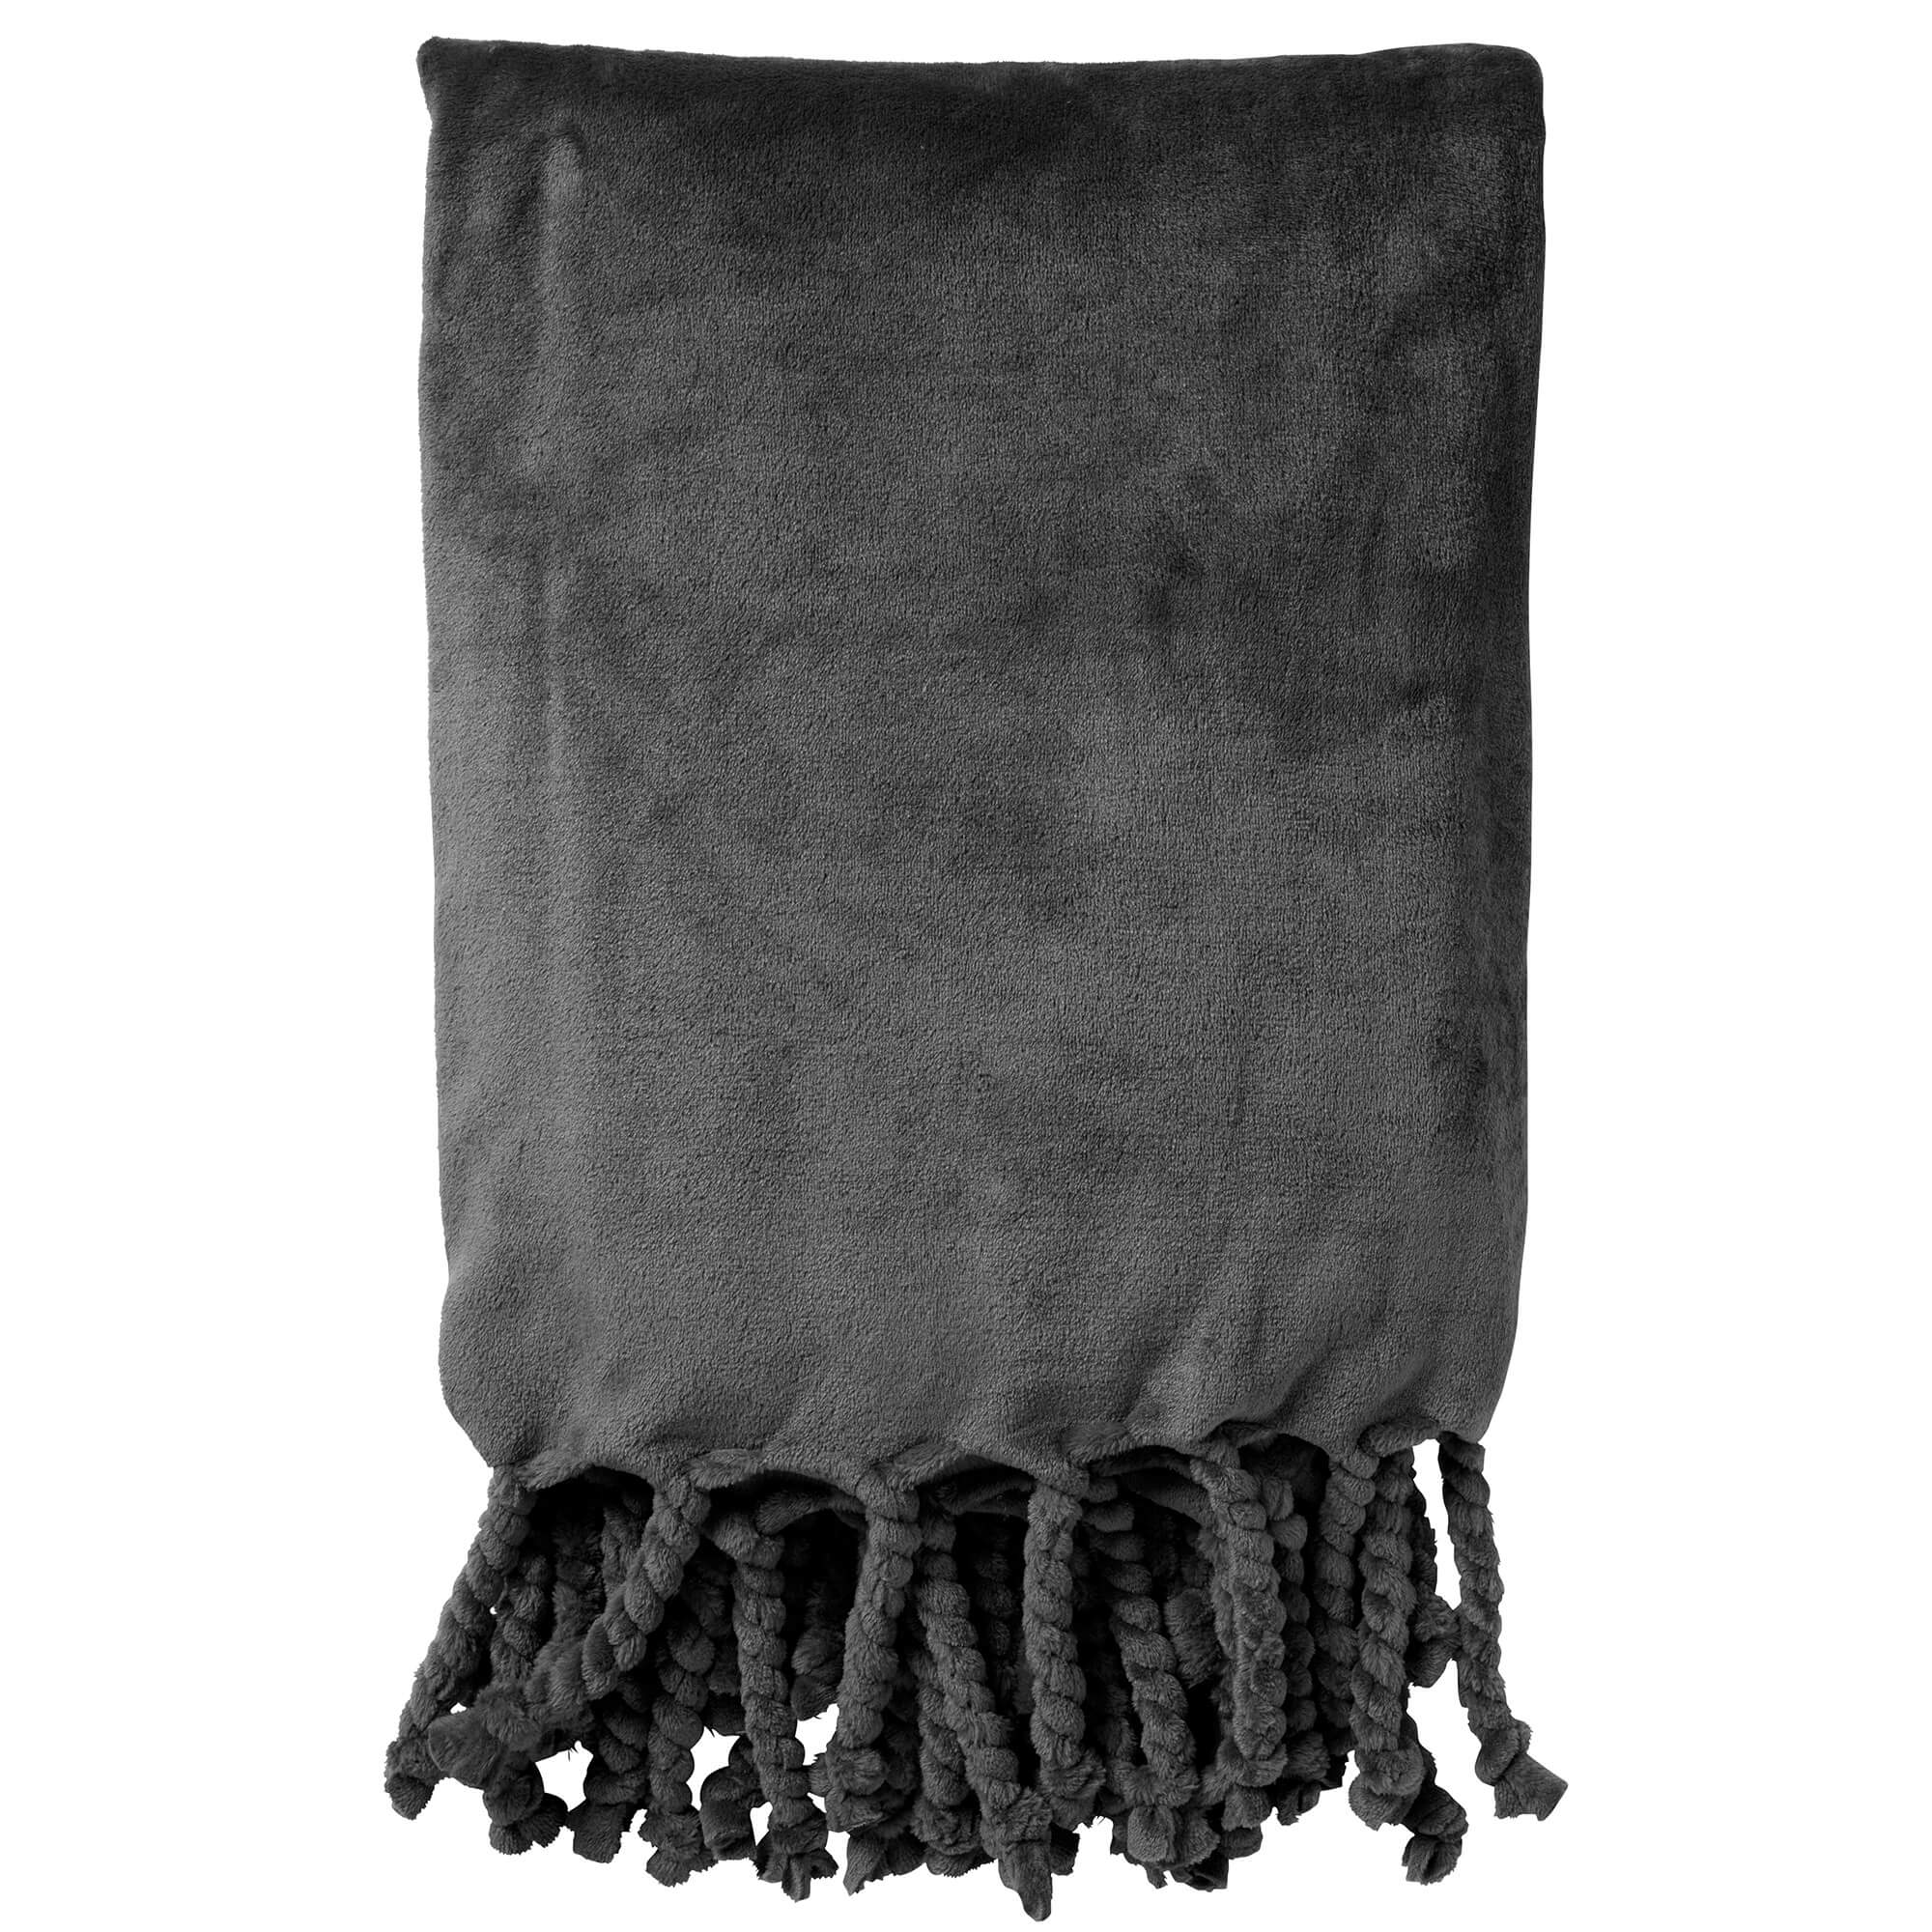 FLORIJN - Plaid 150x200 cm - grote fleece plaid met flosjes - Charcoal Gray - antraciet